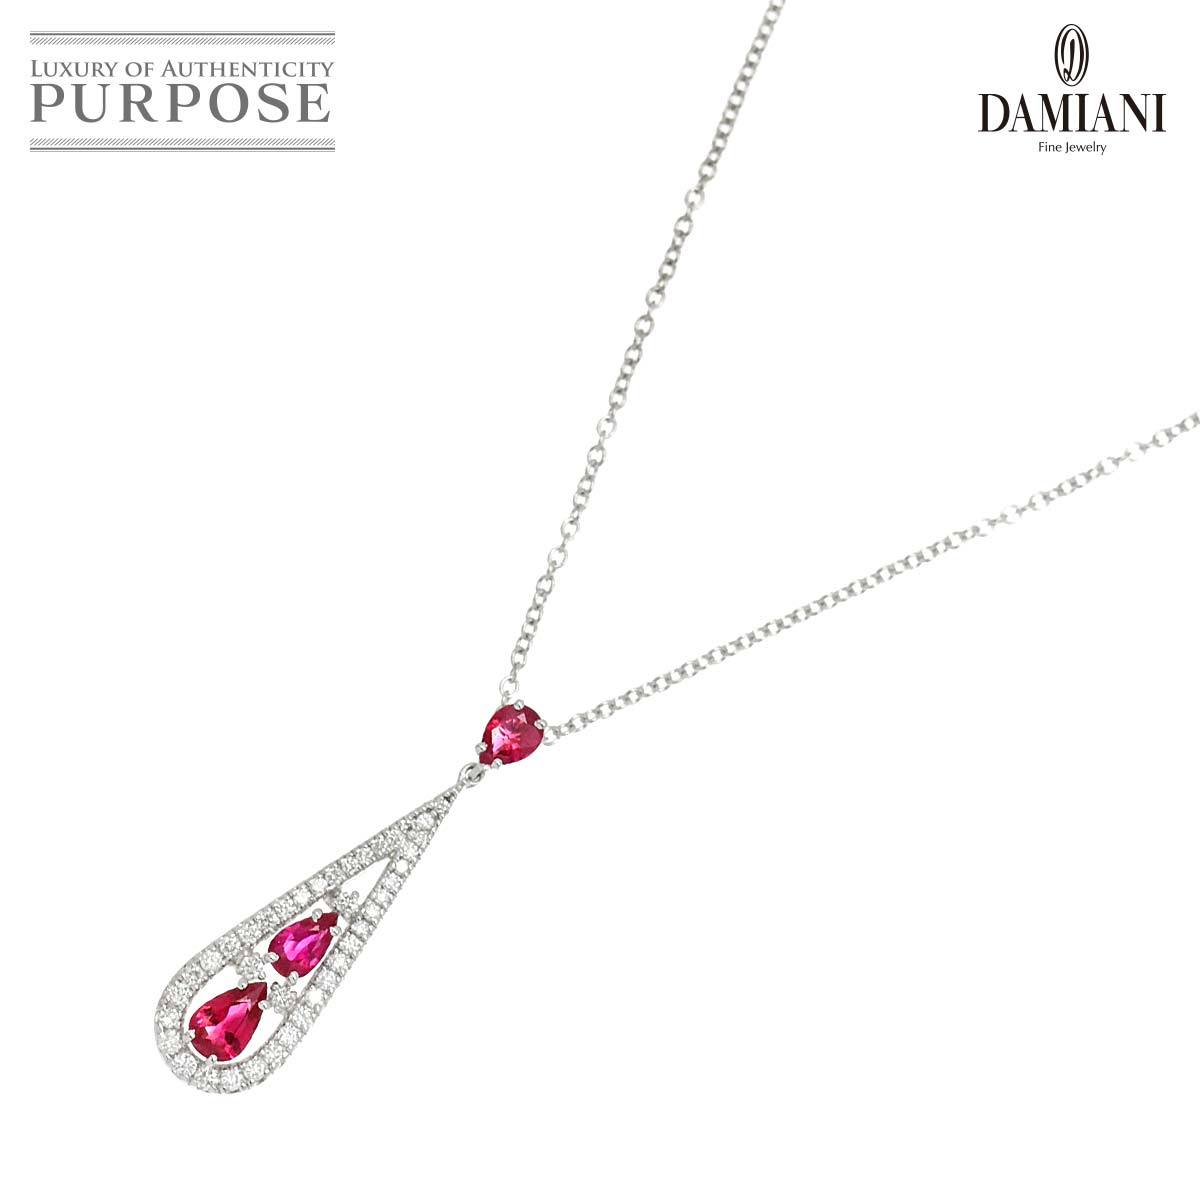 ダミアーニ DAMIANI レジーナクレオパトラ ルビー ダイヤ ネックレス 42cm K18 WG ホワイトゴールド 750 Ruby Diamond Necklace 90205423